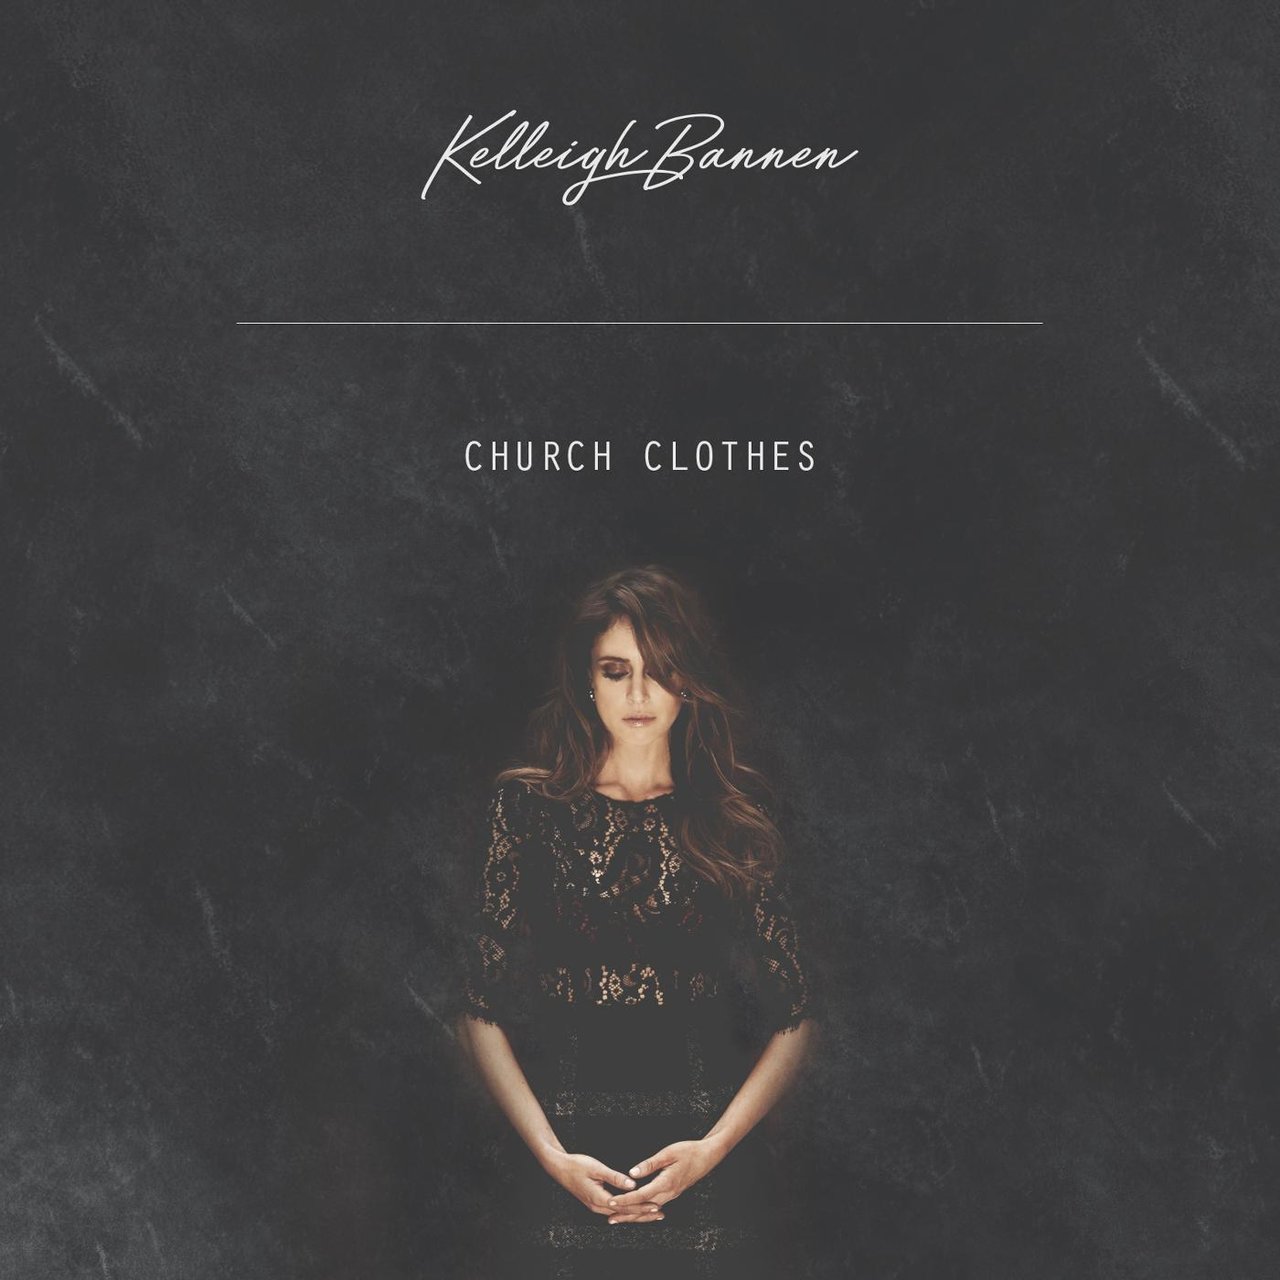 Kelleigh Bannen — Church Clothes cover artwork